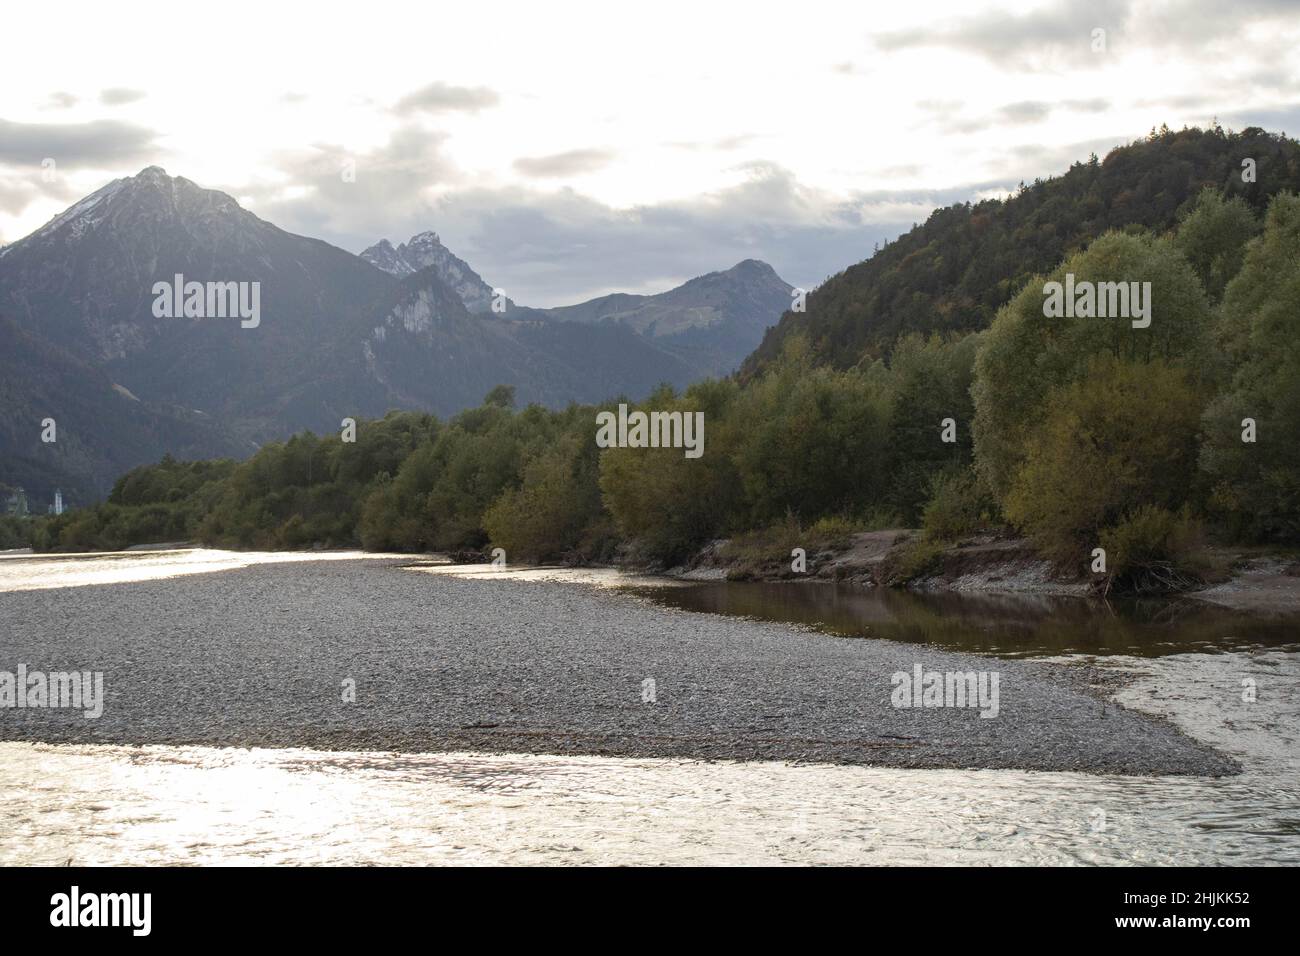 Blick vom Ufer des Lechs auf den Fluss Lech im abendlichen Gegenlicht mit Bergen im Hintergrund Stock Photo